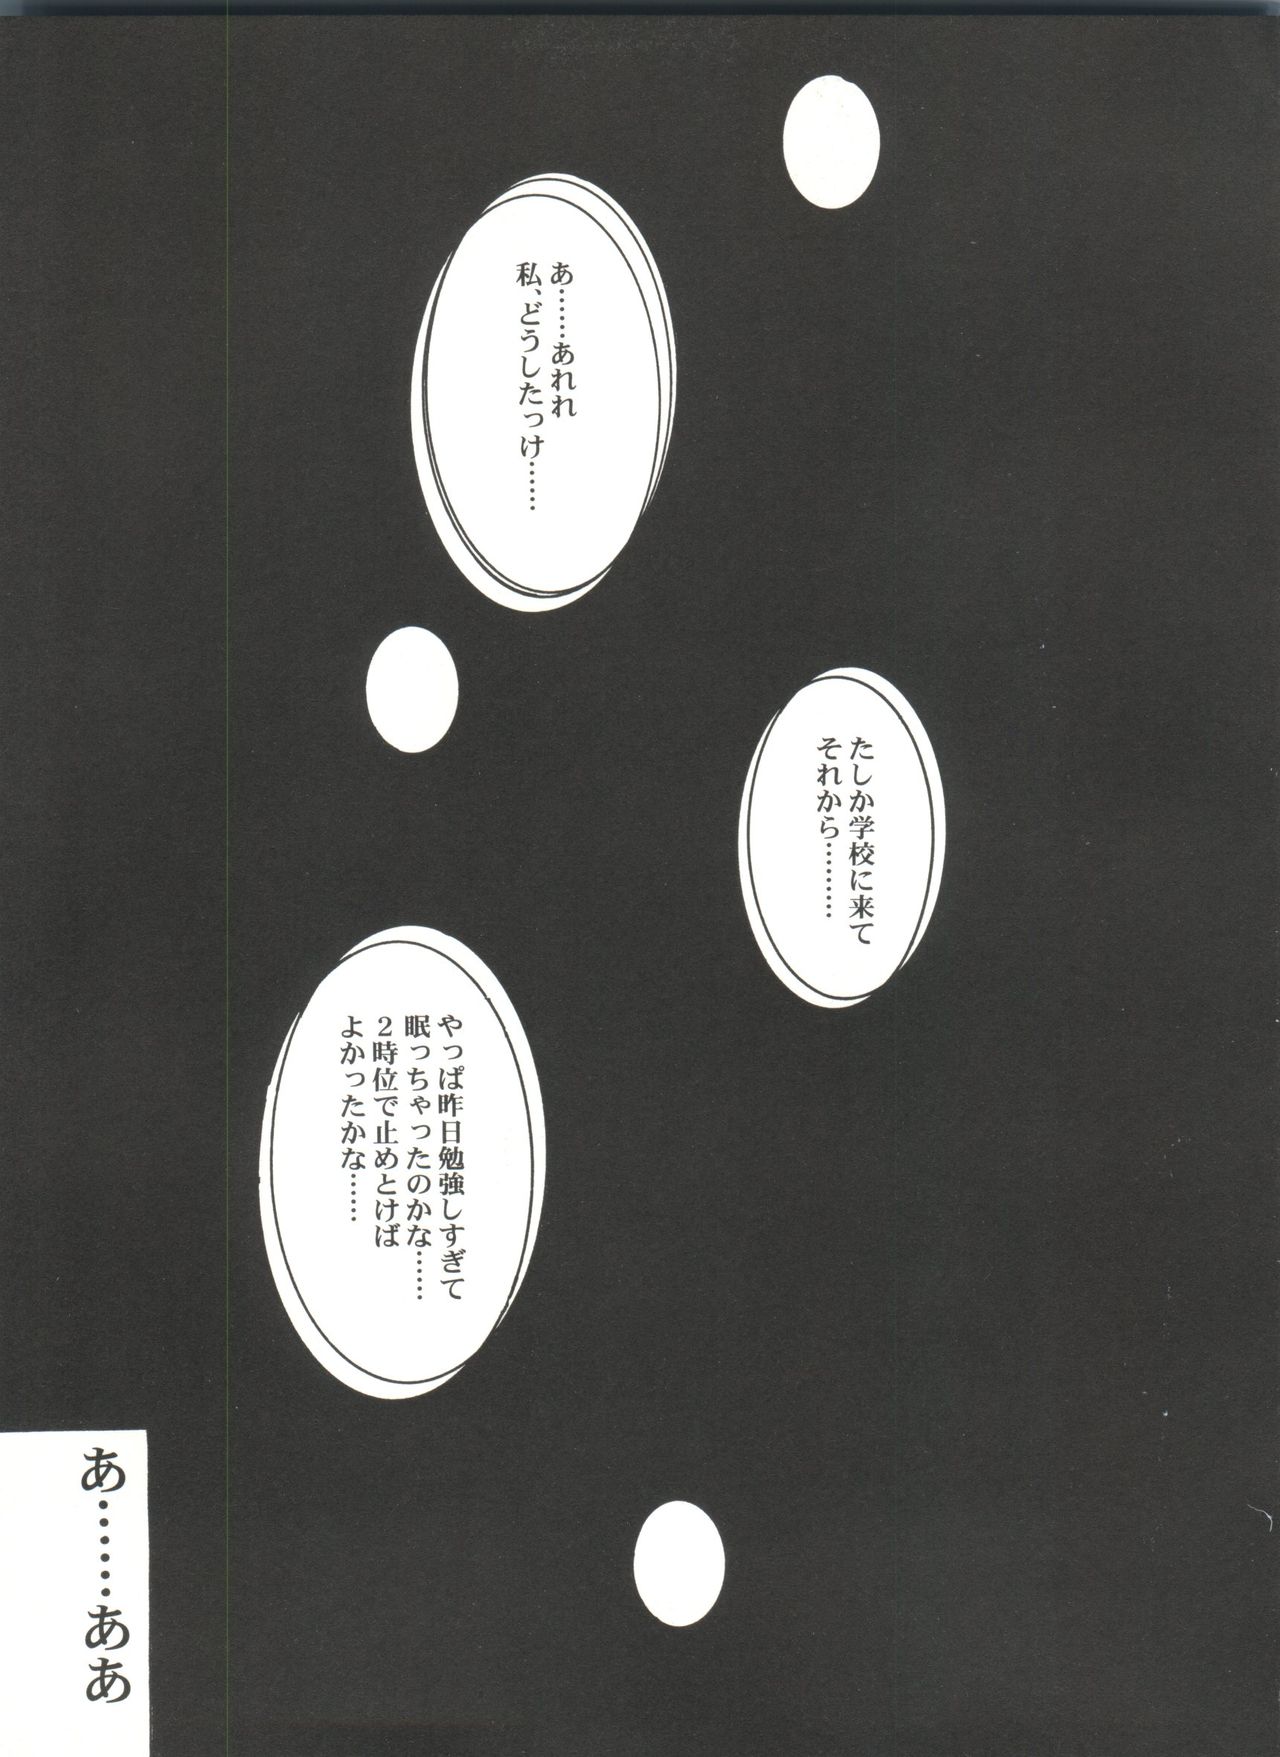 [Anthology] Bishoujo Doujinshi Anthology Cute 4 (Various) [アンソロジー] 美少女同人誌アンソロジーＣＵＴＥ ４ (よろず)